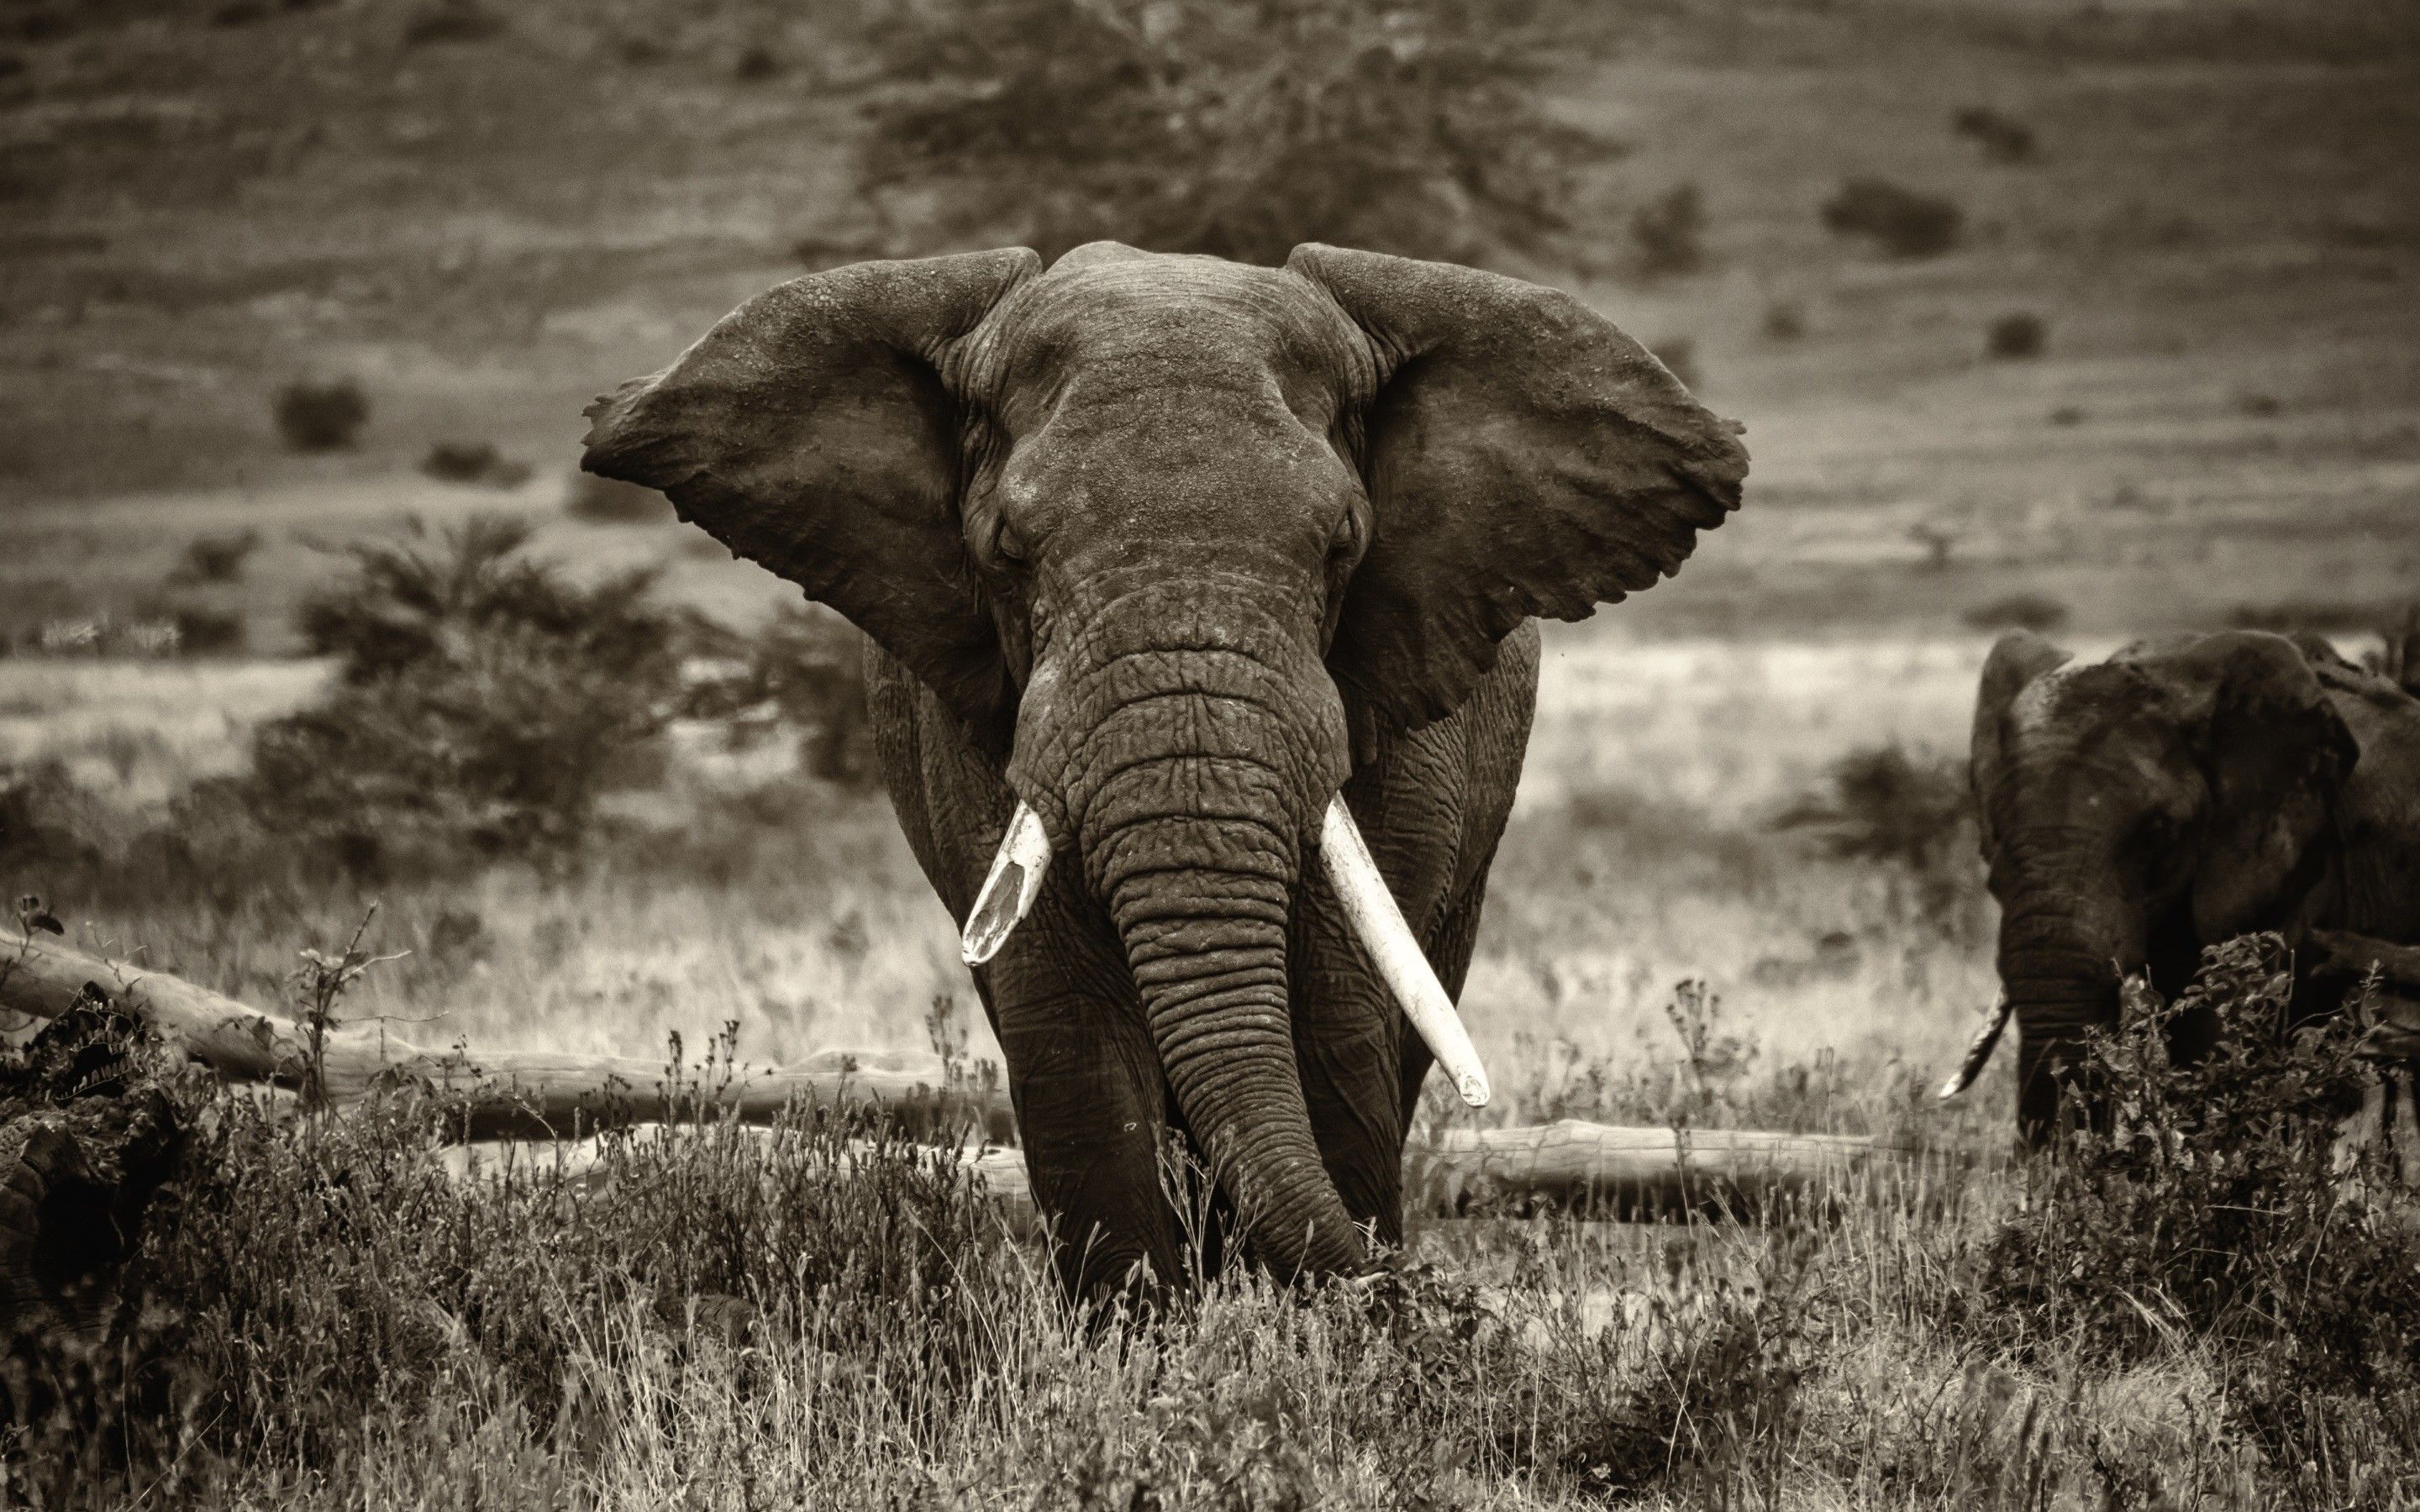 Salvapantallas y papel tapiz de elefante (más de 69 imágenes)